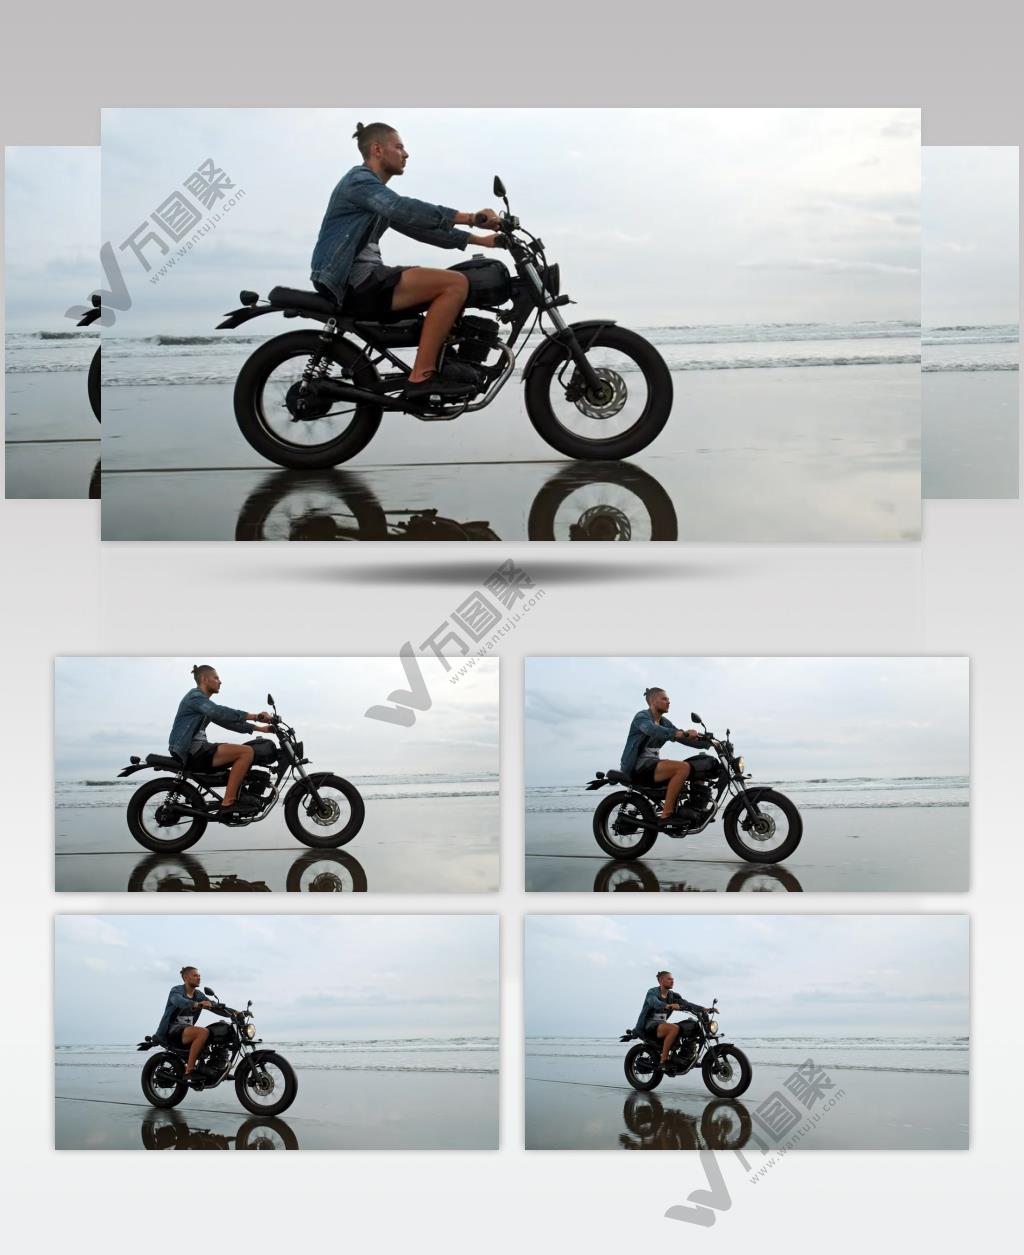 穿着牛仔夹克的男子在沙滩上骑摩托车